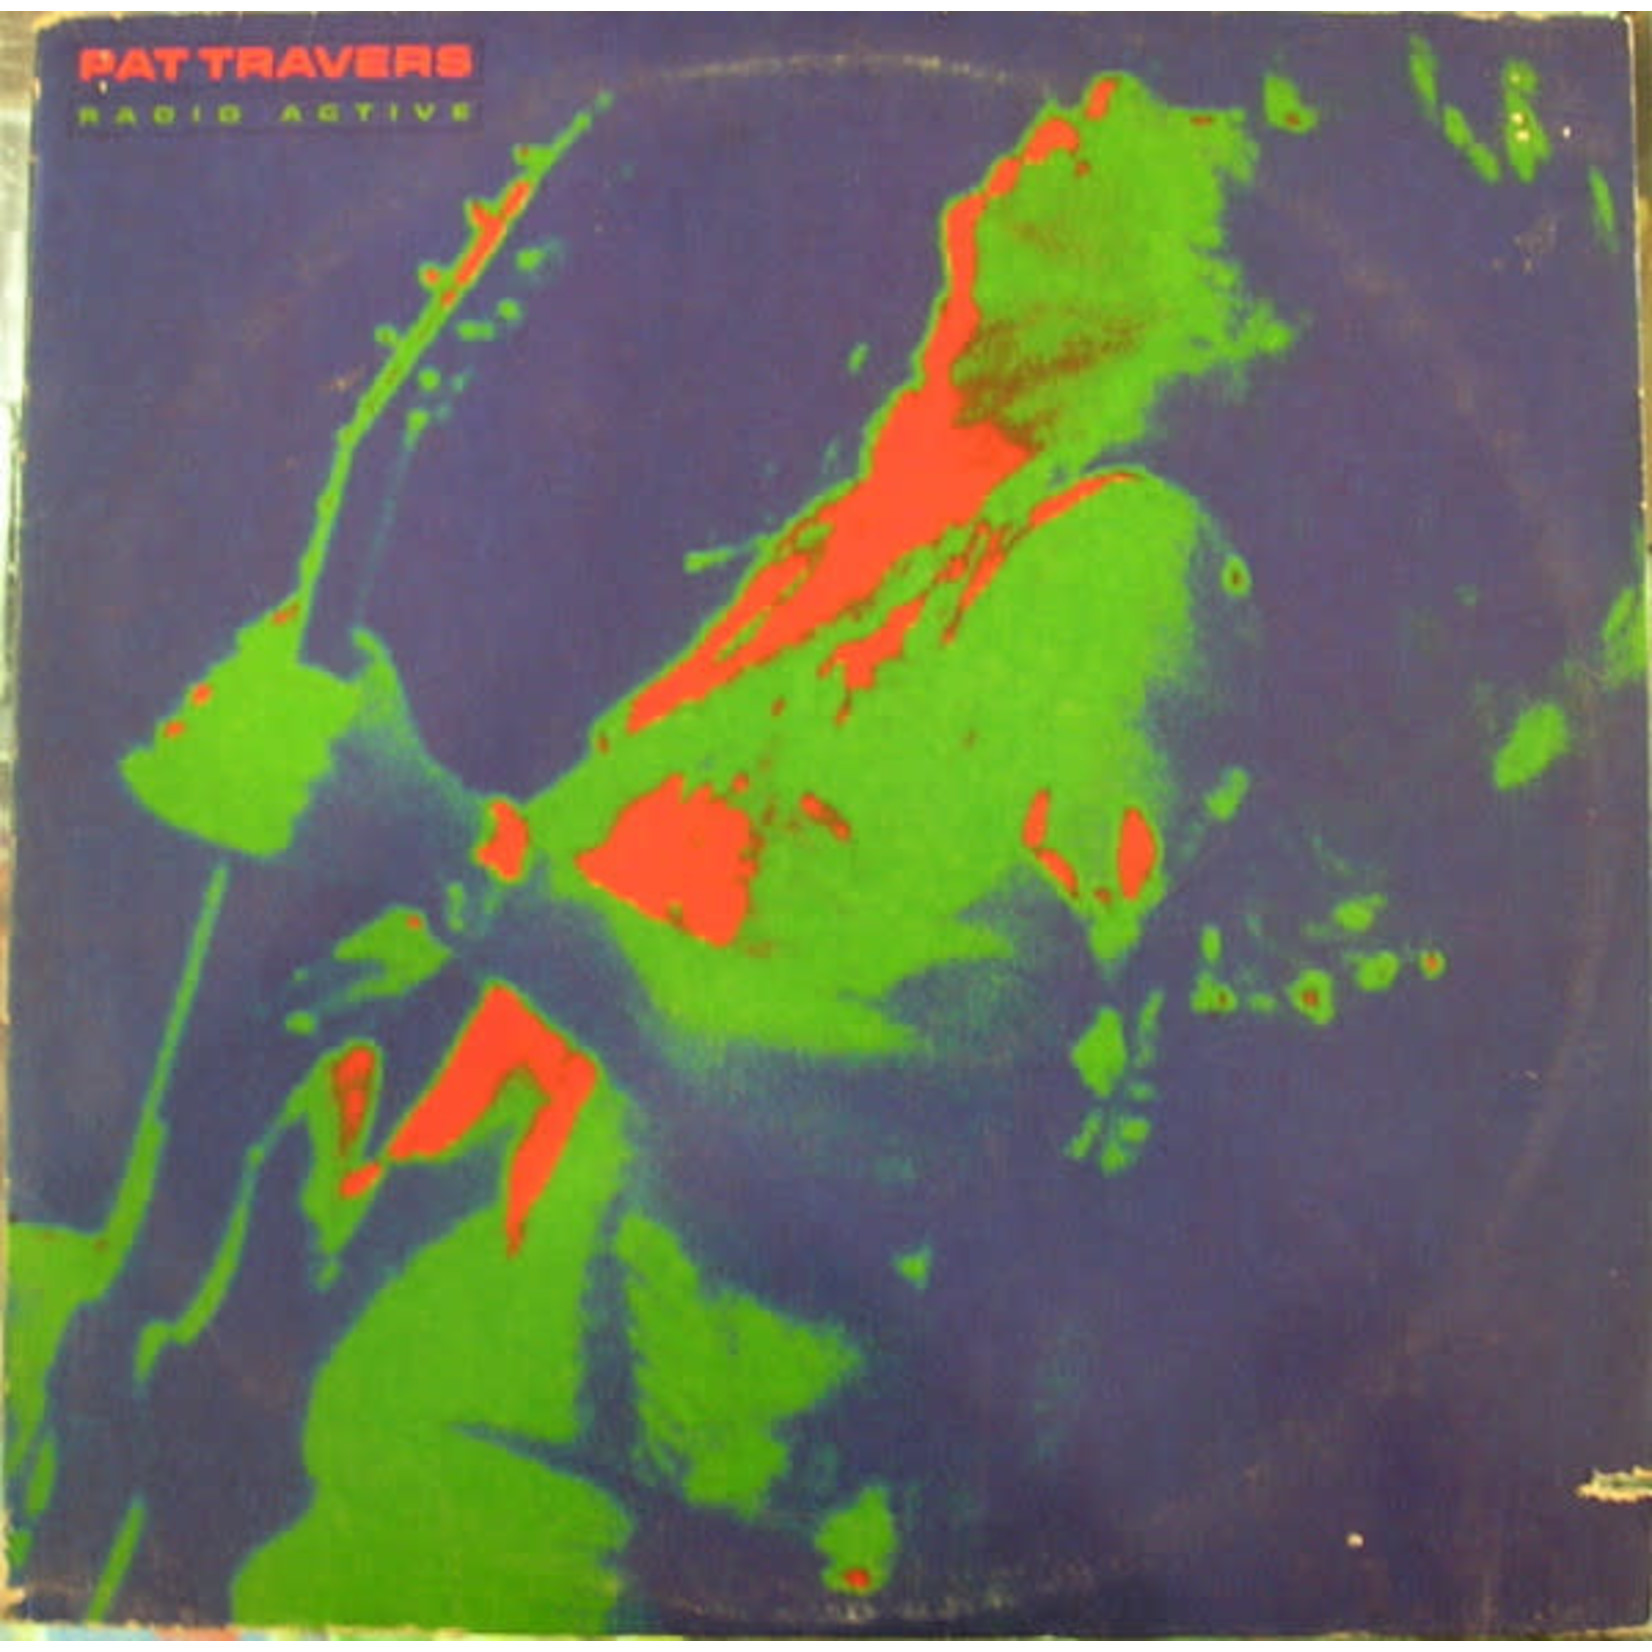 Pat Travers – radio active LP